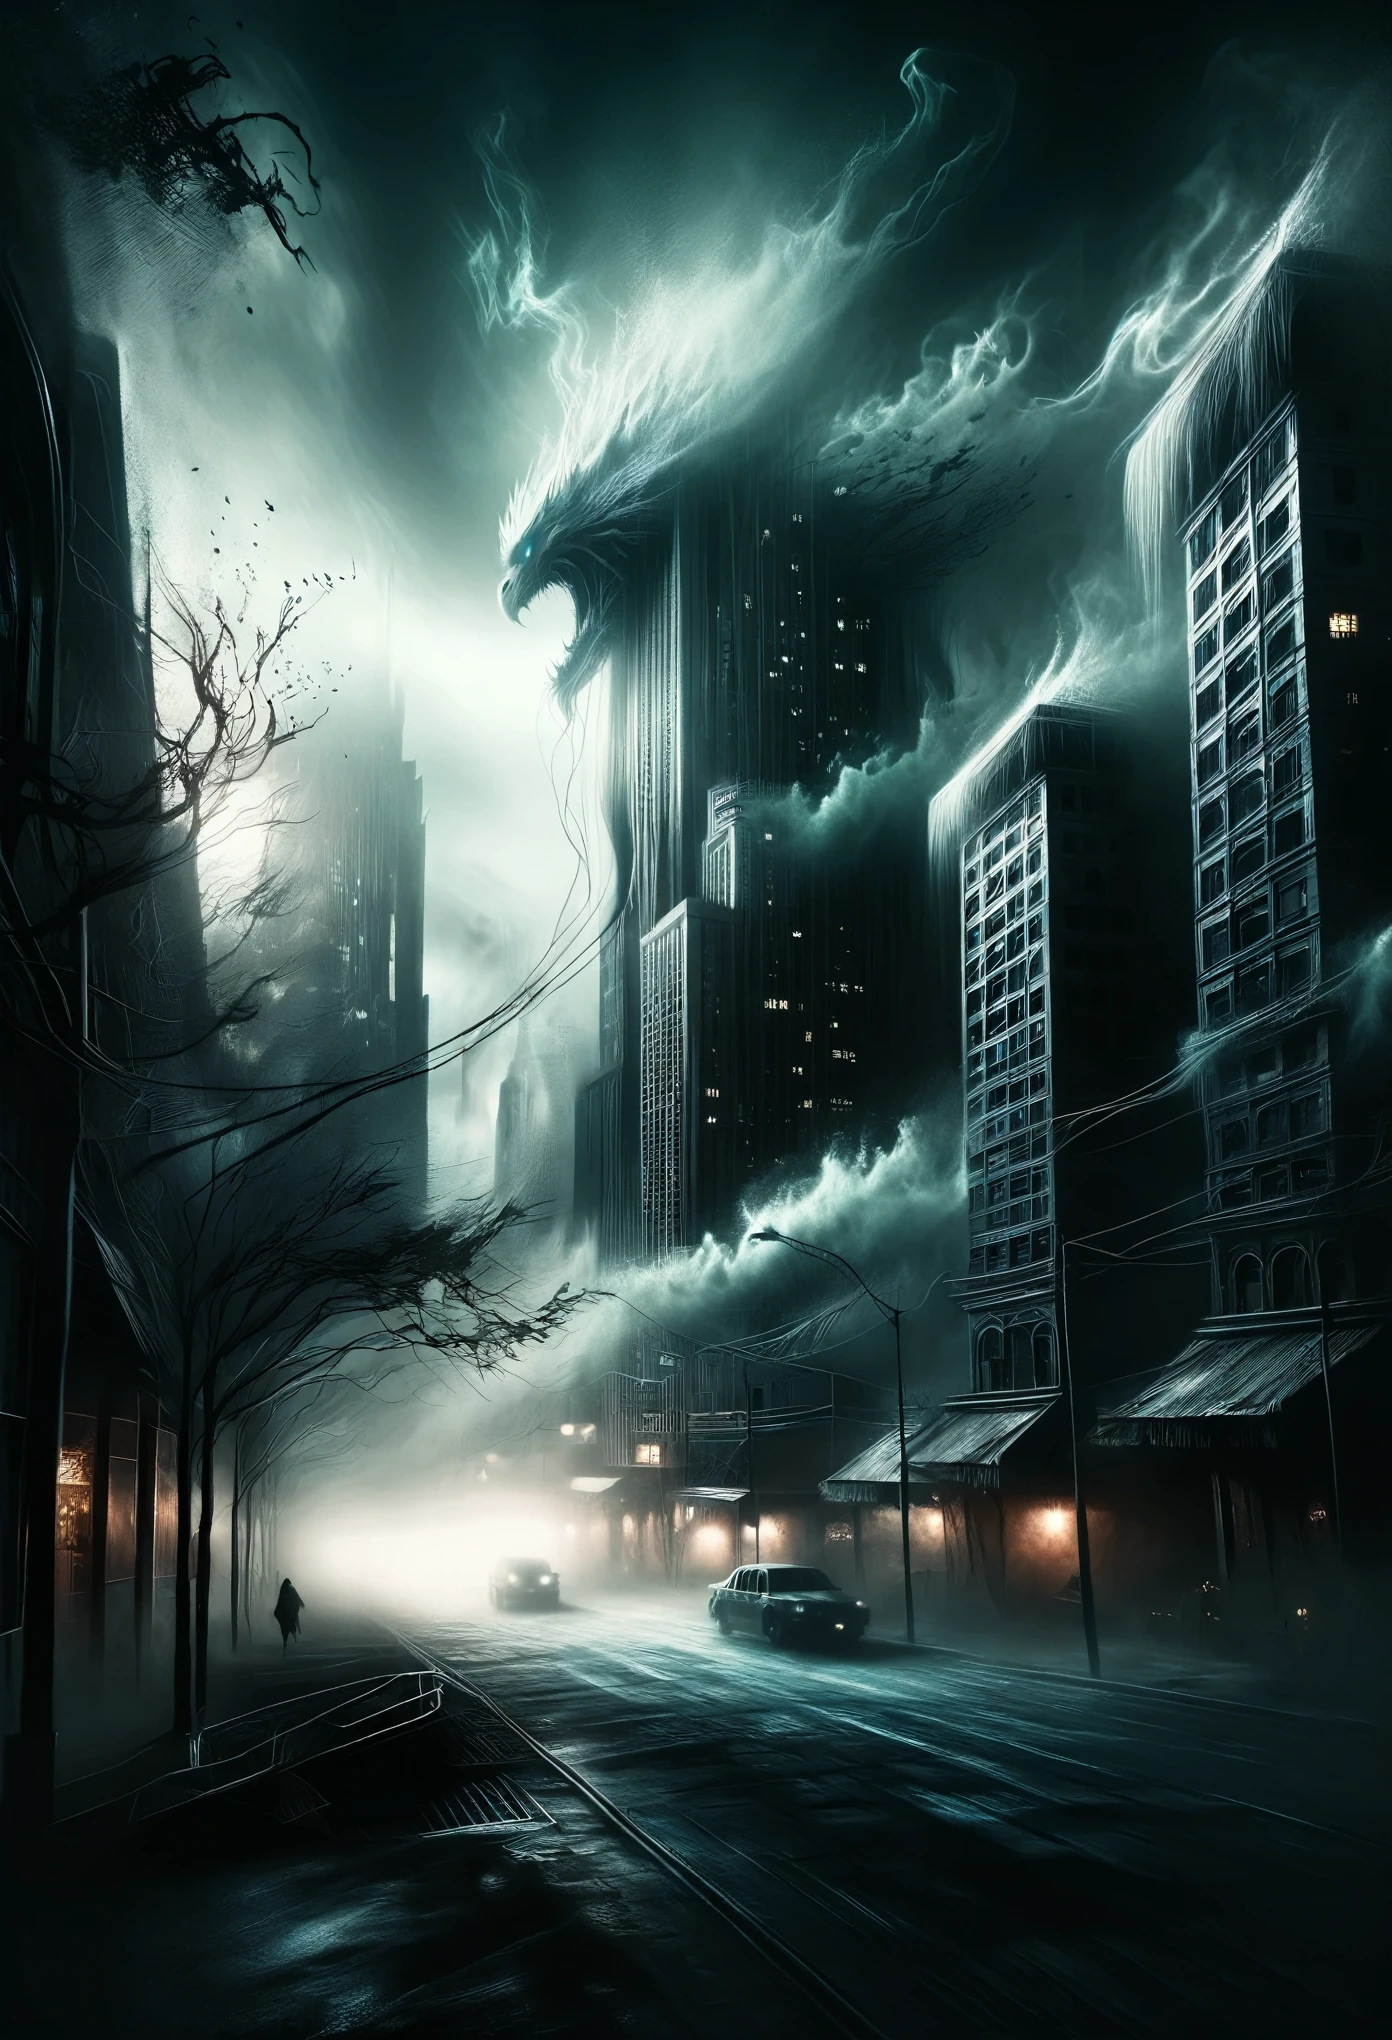 Город-антиутопия, окутанная жуткими тенями, где высокие здания скручиваются и искажаются, словно чудовищные существа, их зловещее сияние создает тревожную атмосферу.